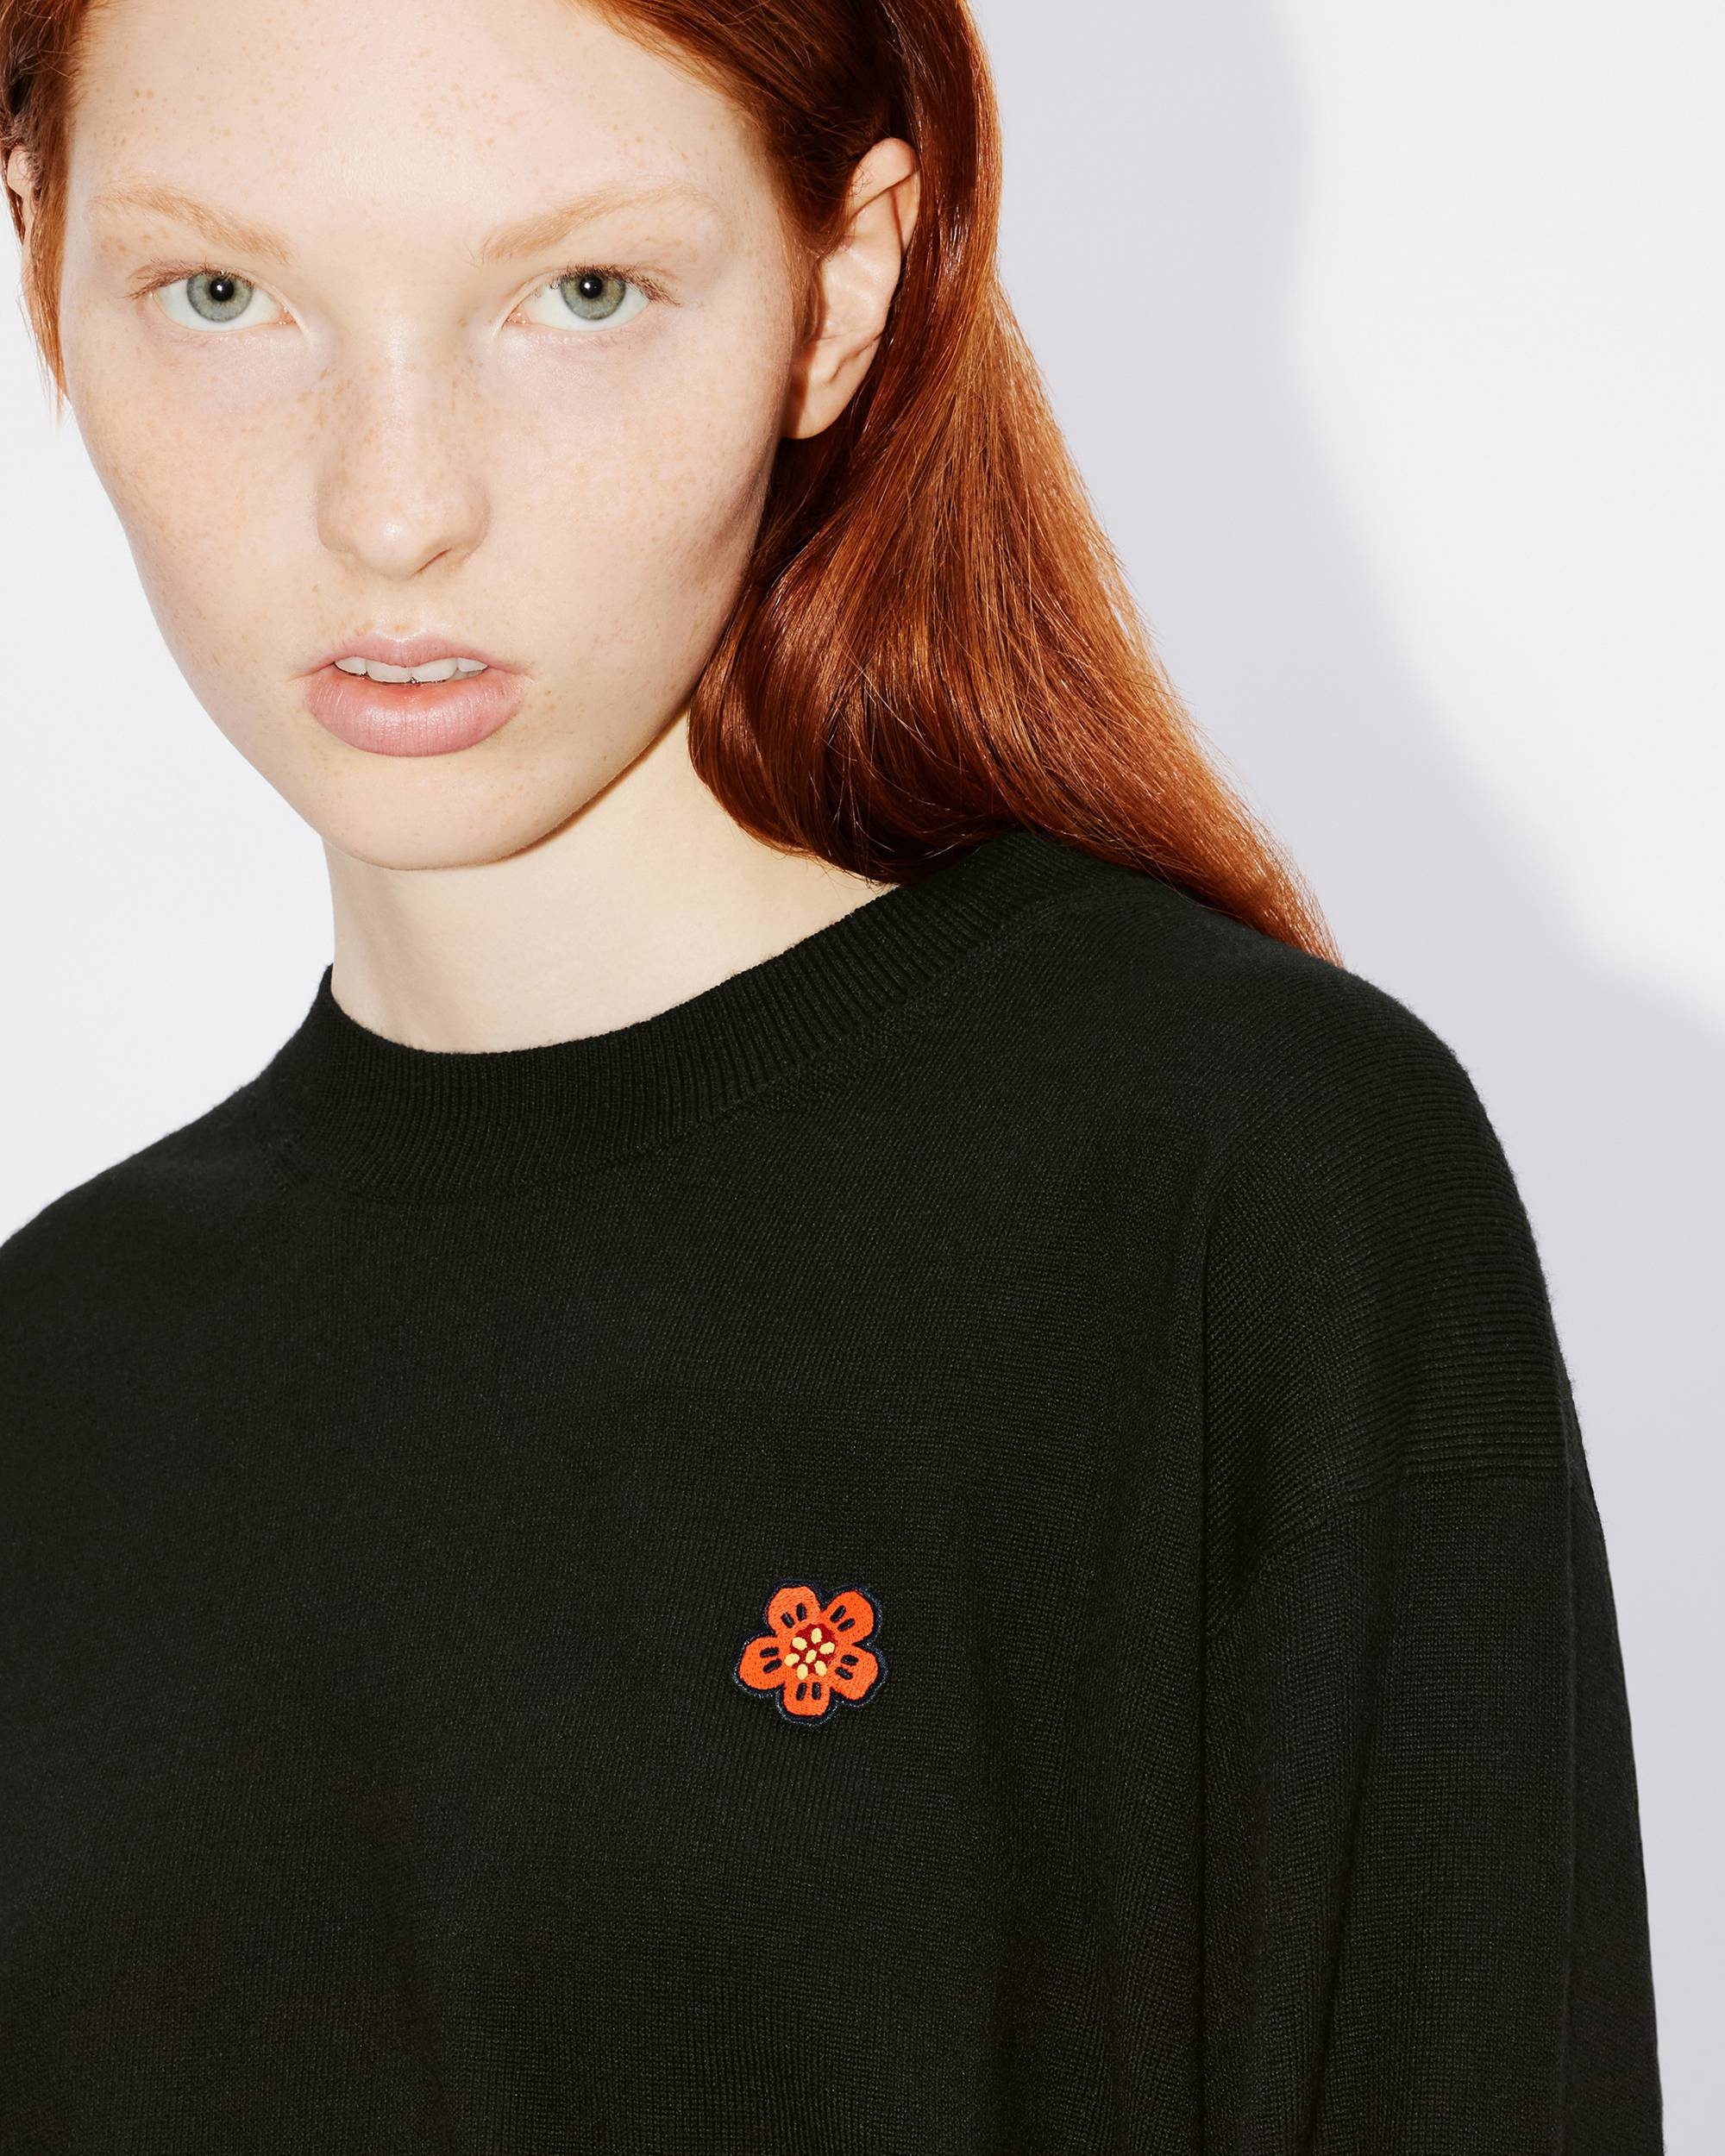 'Boke Flower Crest' embroidered jumper - 6